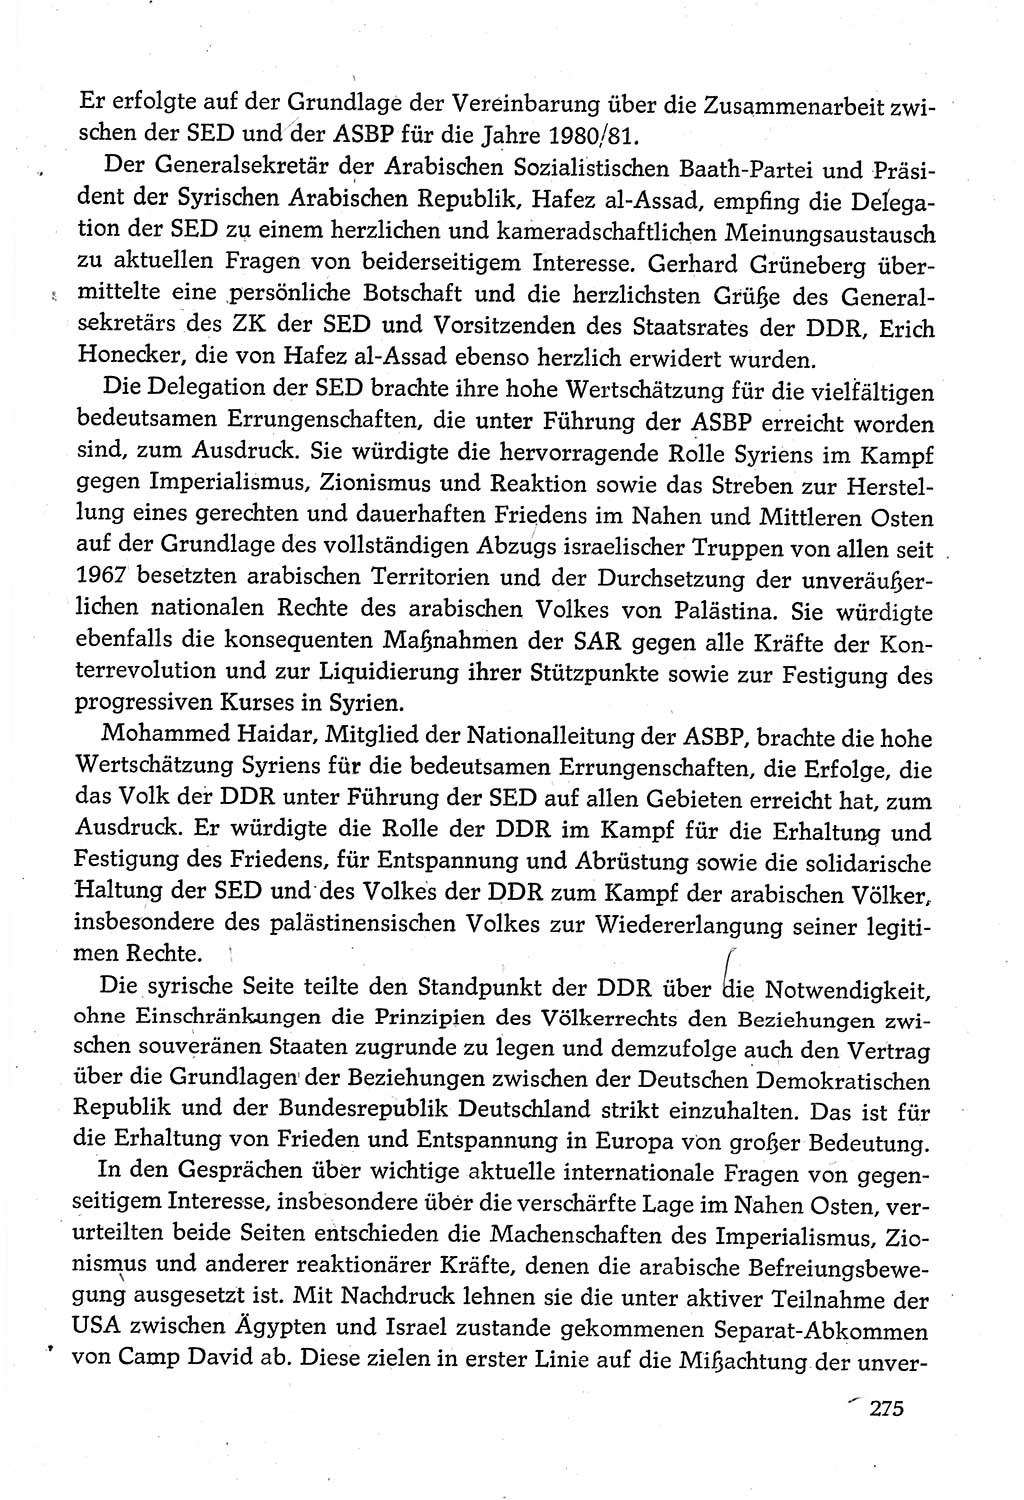 Dokumente der Sozialistischen Einheitspartei Deutschlands (SED) [Deutsche Demokratische Republik (DDR)] 1980-1981, Seite 275 (Dok. SED DDR 1980-1981, S. 275)